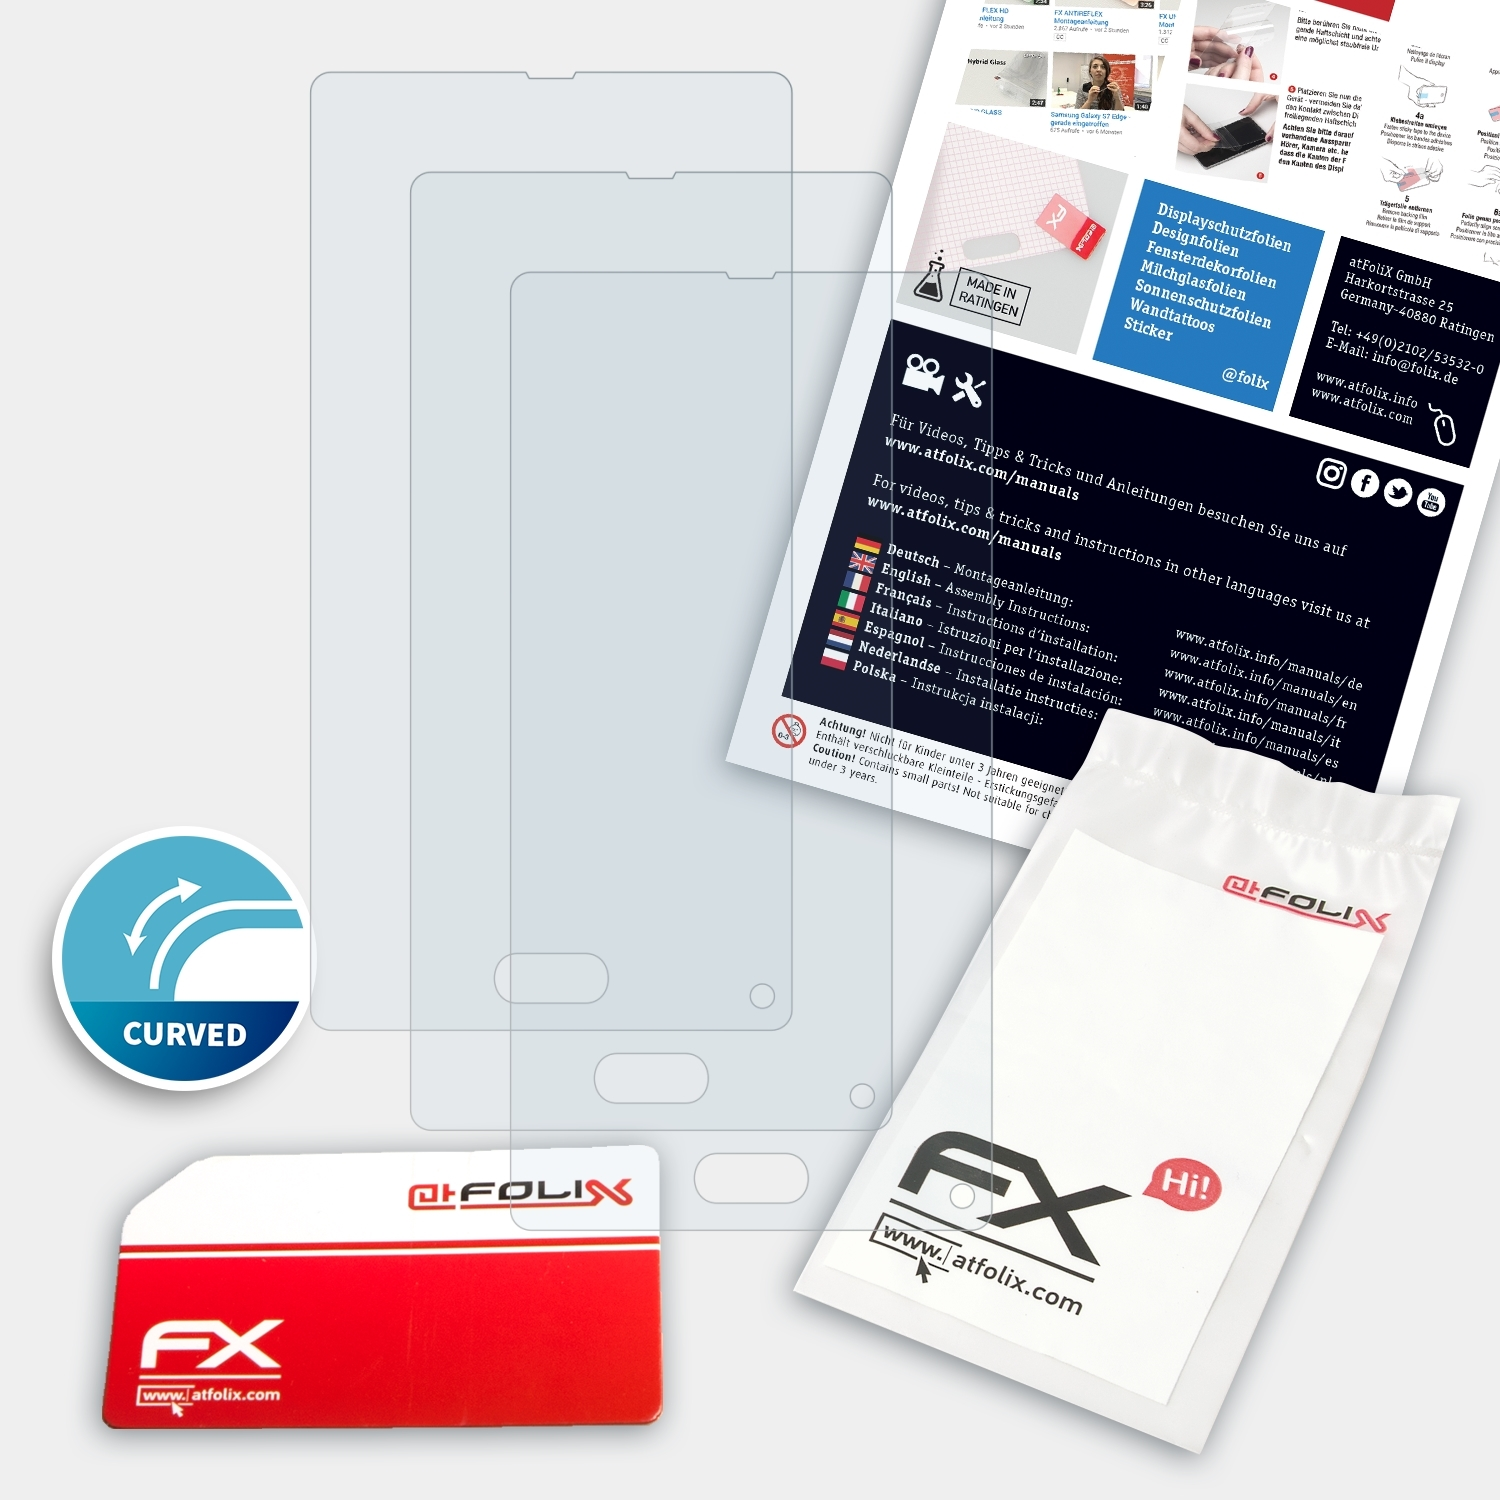 Displayschutz(für Ulefone Mix) FX-ActiFleX 3x ATFOLIX